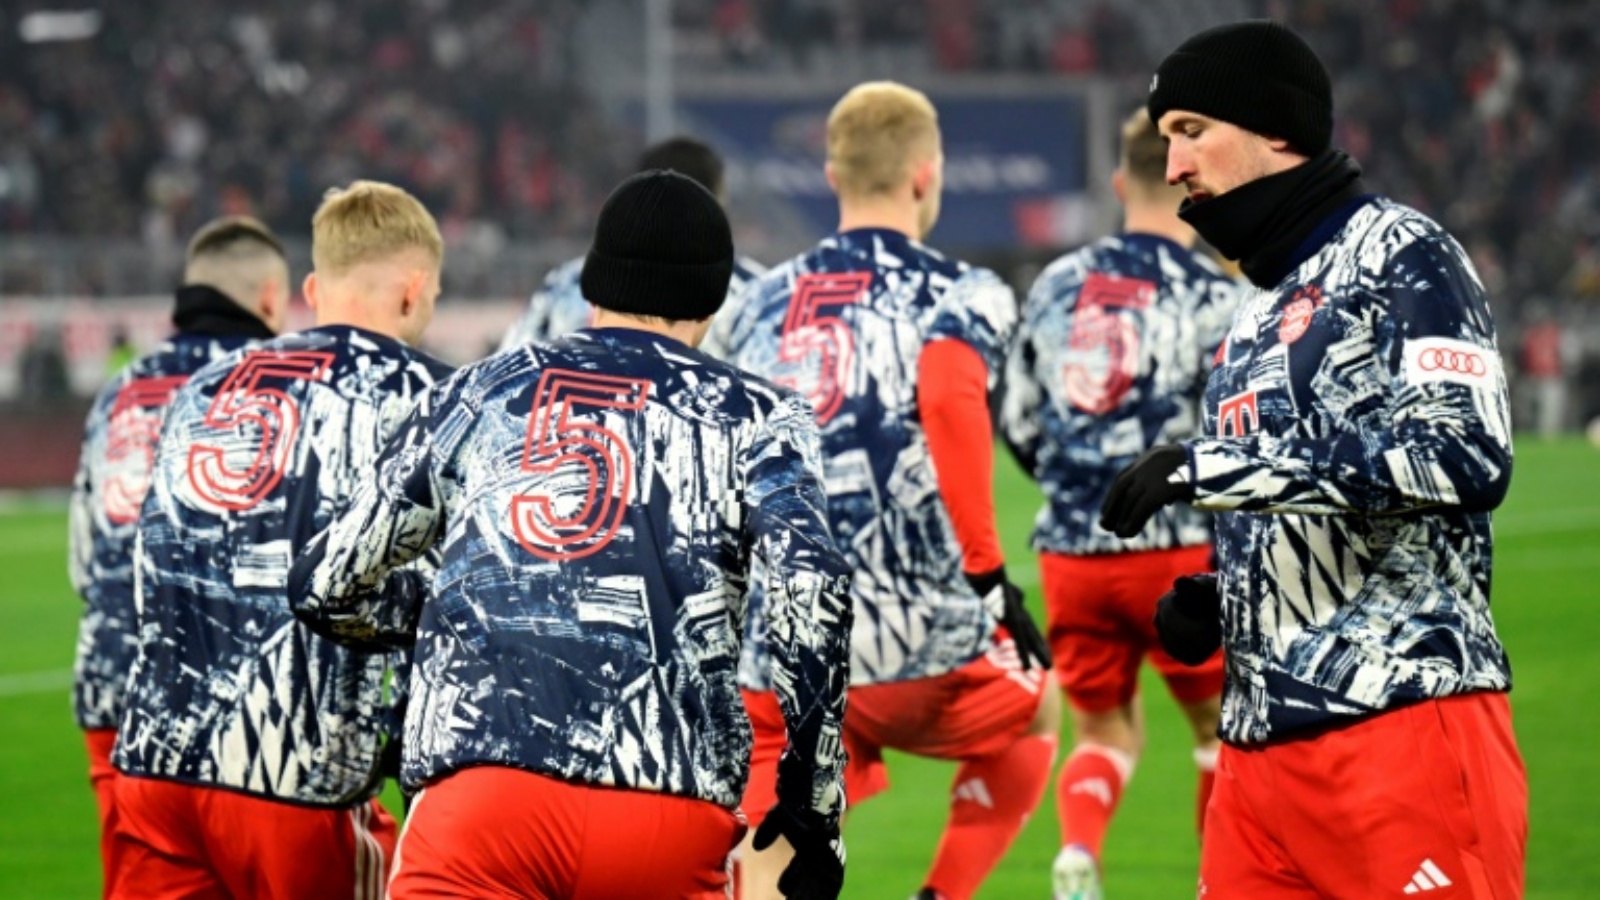 لاعبو بايرن ميونيخ يرتدون خلال الاحماء قمصاناً تحمل الرقم 5 الذي اشتهر به الراحل فرانتس بكنباور، وذلك قبل المباراة ضد هوفنهايم في الدوري الألماني لكرة القدم. ميونيخ، جنوب ألمانيا، في 12 كانون الثاني (يناير) 2024